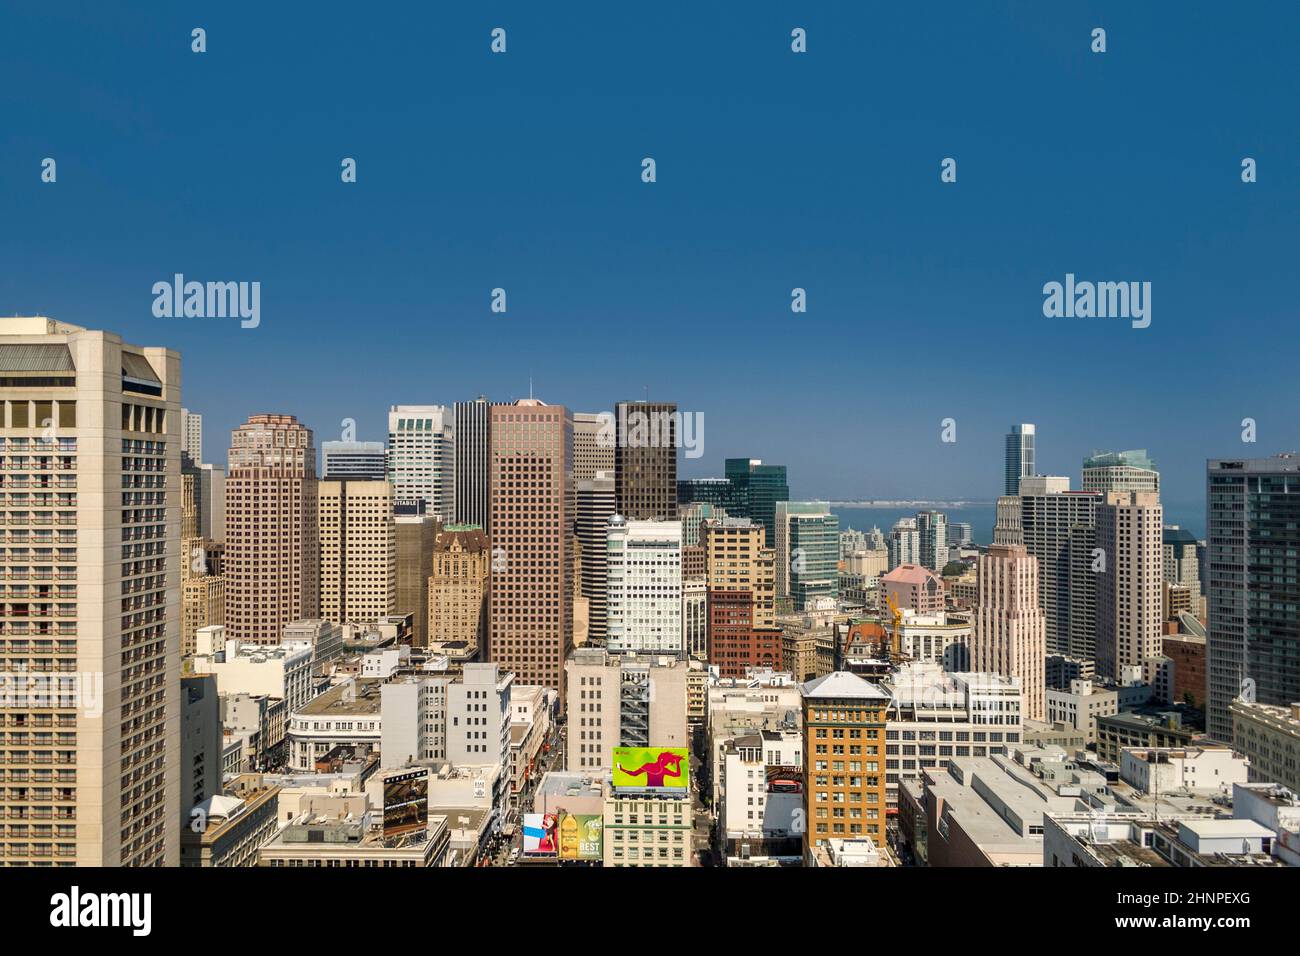 La plataforma del Sheraton está abierta para los turistas a mediodía para obtener una visión panorámica de la ciudad de San Francisco Foto de stock